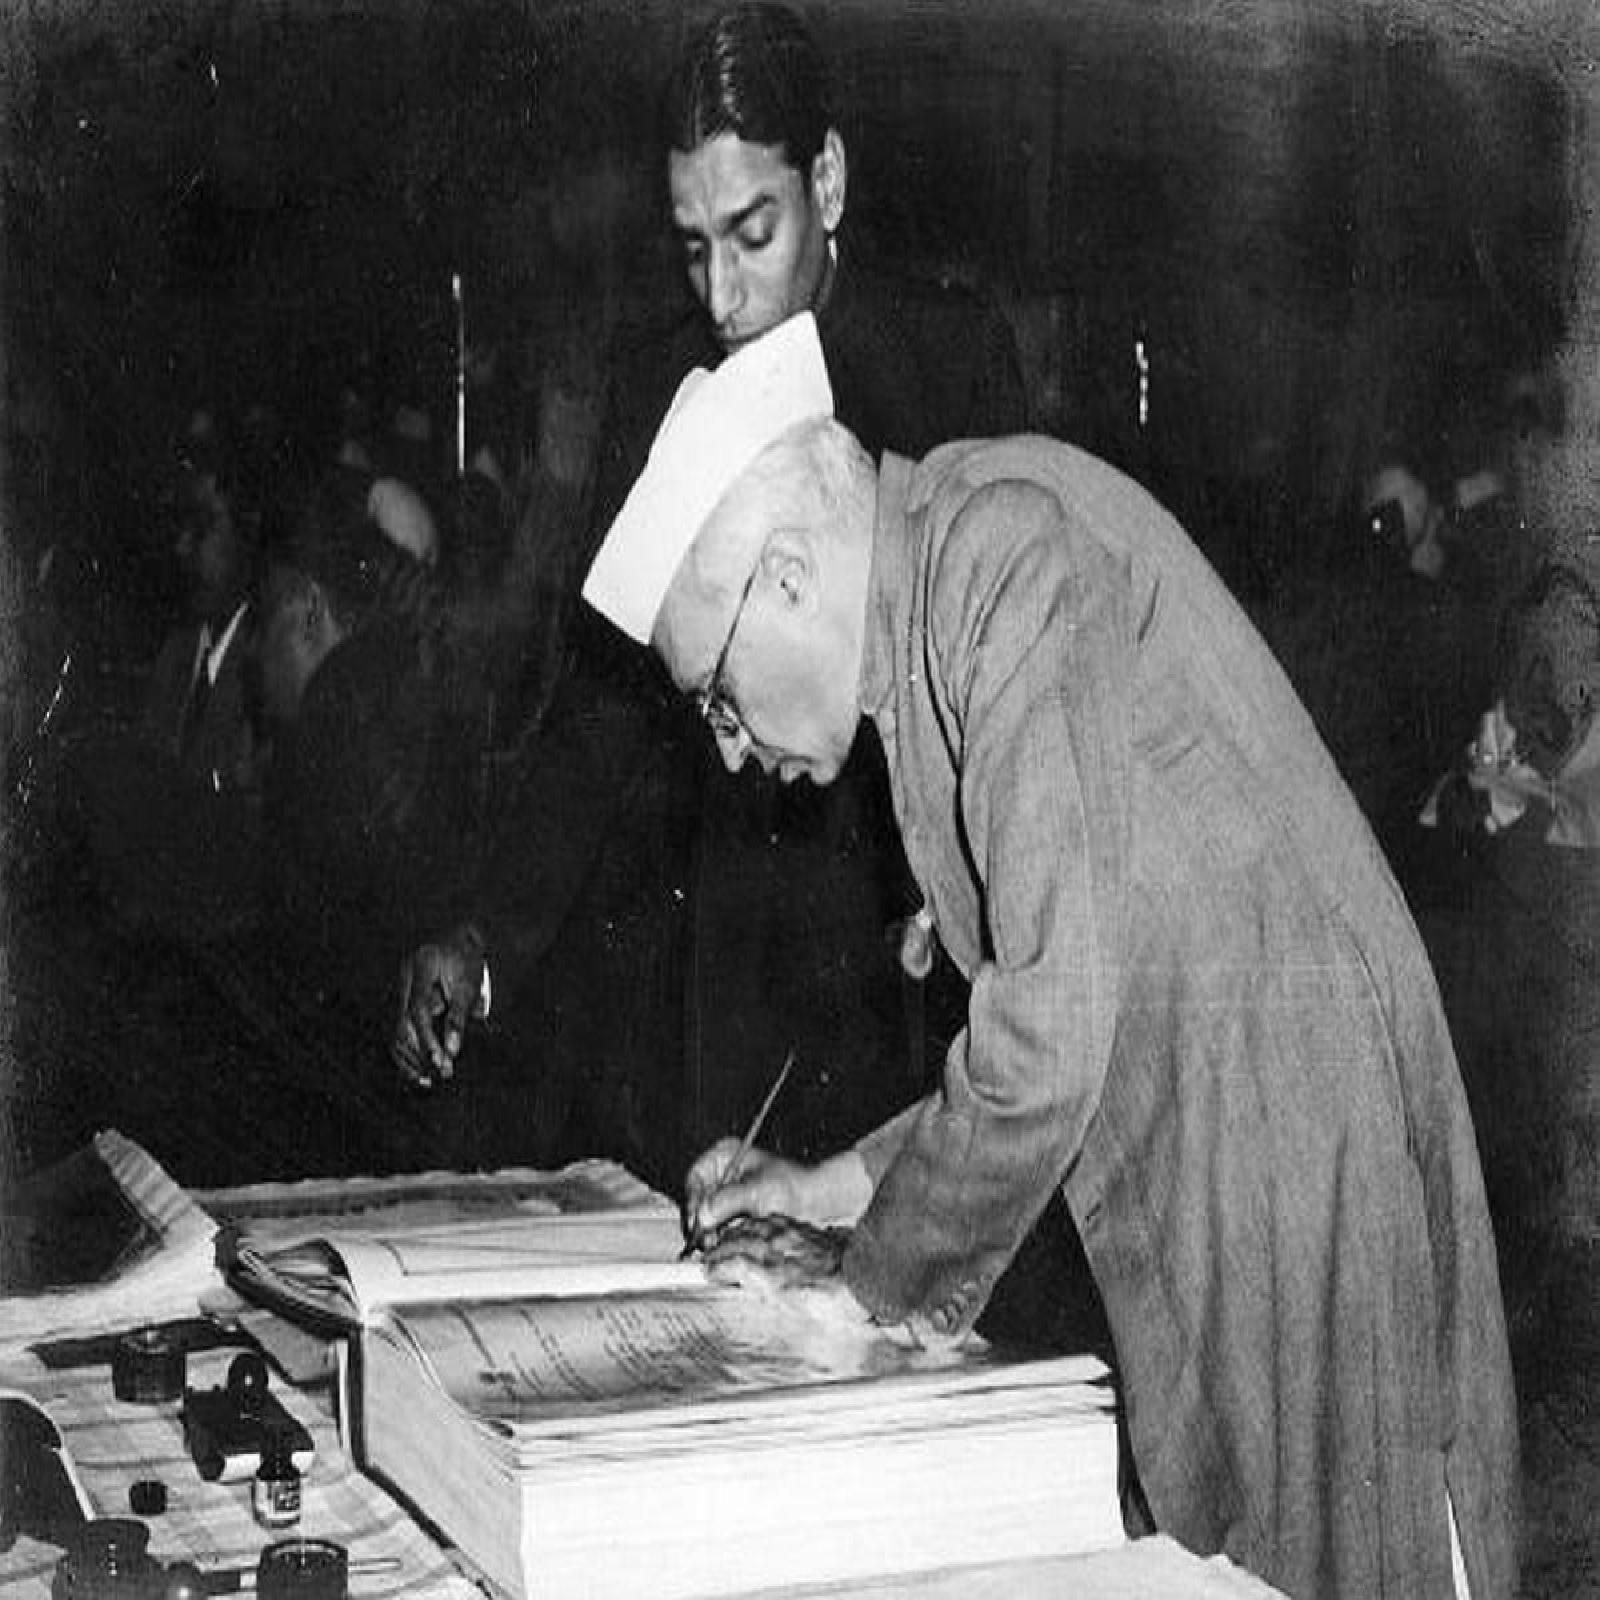  દેશ આજે 73મો પ્રજાસત્તાક દિવસ (Republic Day 2022) માનવી રહ્યો છે. વર્ષ 1950માં દેશભરમાં આજના દિવસે જ બંધારણ (constitution) લાગુ થયું હતું જેથી દેશ સંપૂર્ણ સ્વતંત્ર થઈ ગયો હતો. 26 જાન્યુઆરીના દિવસે જ ગણતંત્ર દિવસ ઉજવવાનું કારણ હતું. દેશના નેતાઓએ ભારતના પૂર્વ વડાપ્રધાન પંડિત જવાહરલાલ નહેરુ (Jawaharlal Nehru)ની અધ્યક્ષતામાં આજના દિવસે 1929માં કોંગ્રેસના લાહોર અધિવેશનમાં પૂર્ણ સ્વરાજનો સંકલ્પ લીધો હતો અને નક્કી કર્યું હતું કે દેશ આવતા વર્ષે એટલે કે 26 જાન્યુઆરી 1930ના પહેલો સ્વતંત્રતા દિવસ મનાવશે. (ફોટો: Wikimedia Commons)